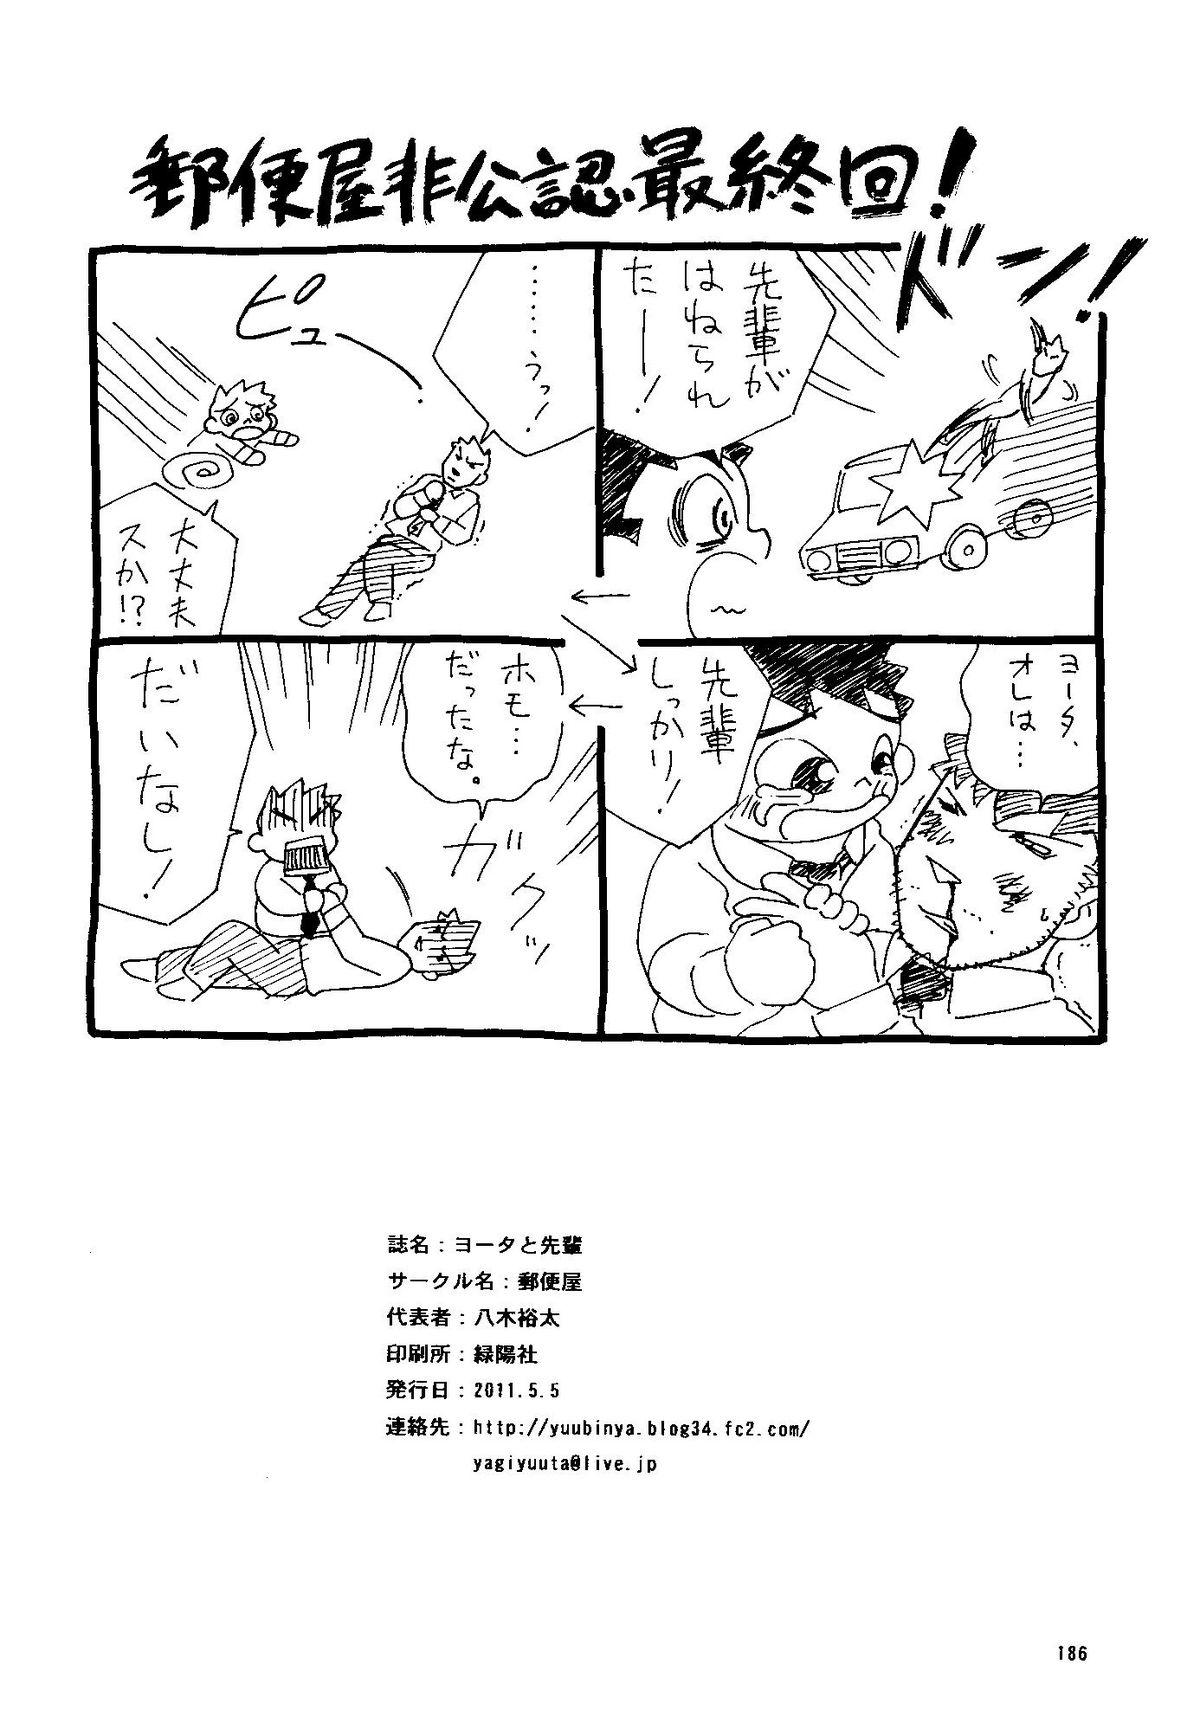 Gangbang Futoshi Yagihiroshi (Yuubinya) - Youta to Sempai Amatoriale - Page 186